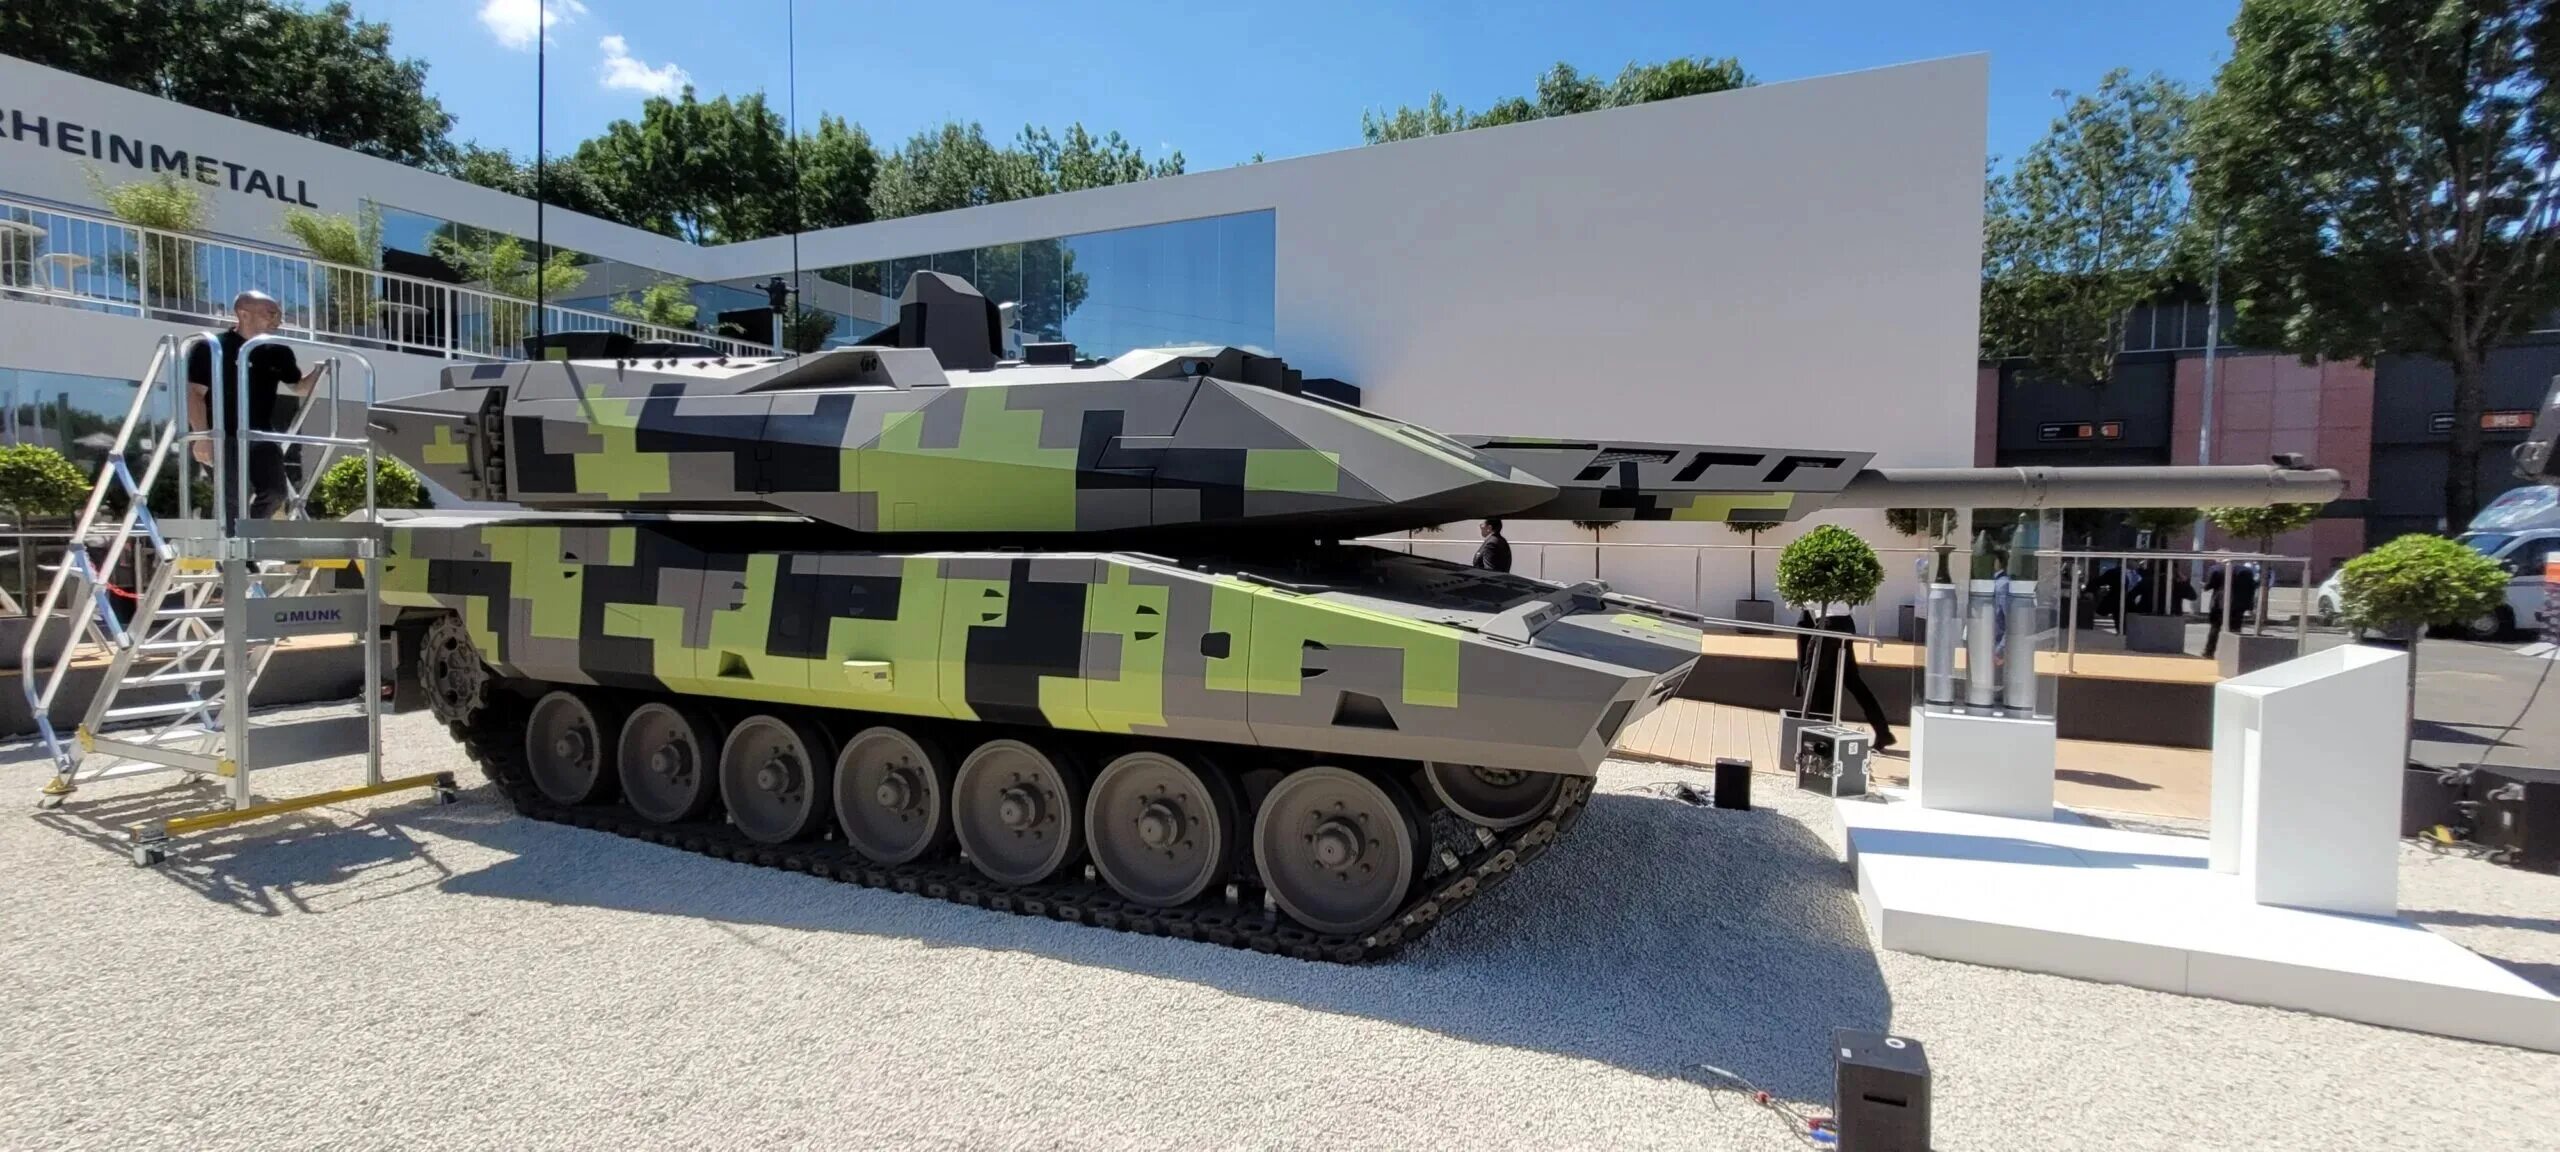 Panther kf51. Новый танк kf51 Panther. Kf51 Panther танк. /Rheinmetall_kf51.